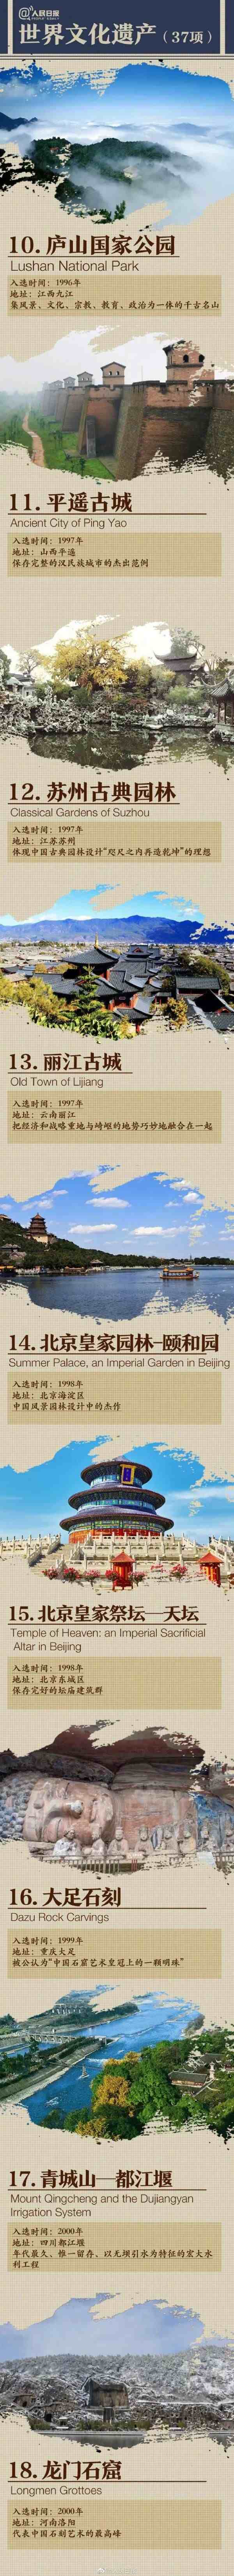 中国的世界遗产名录|中国55项世界遗产图鉴